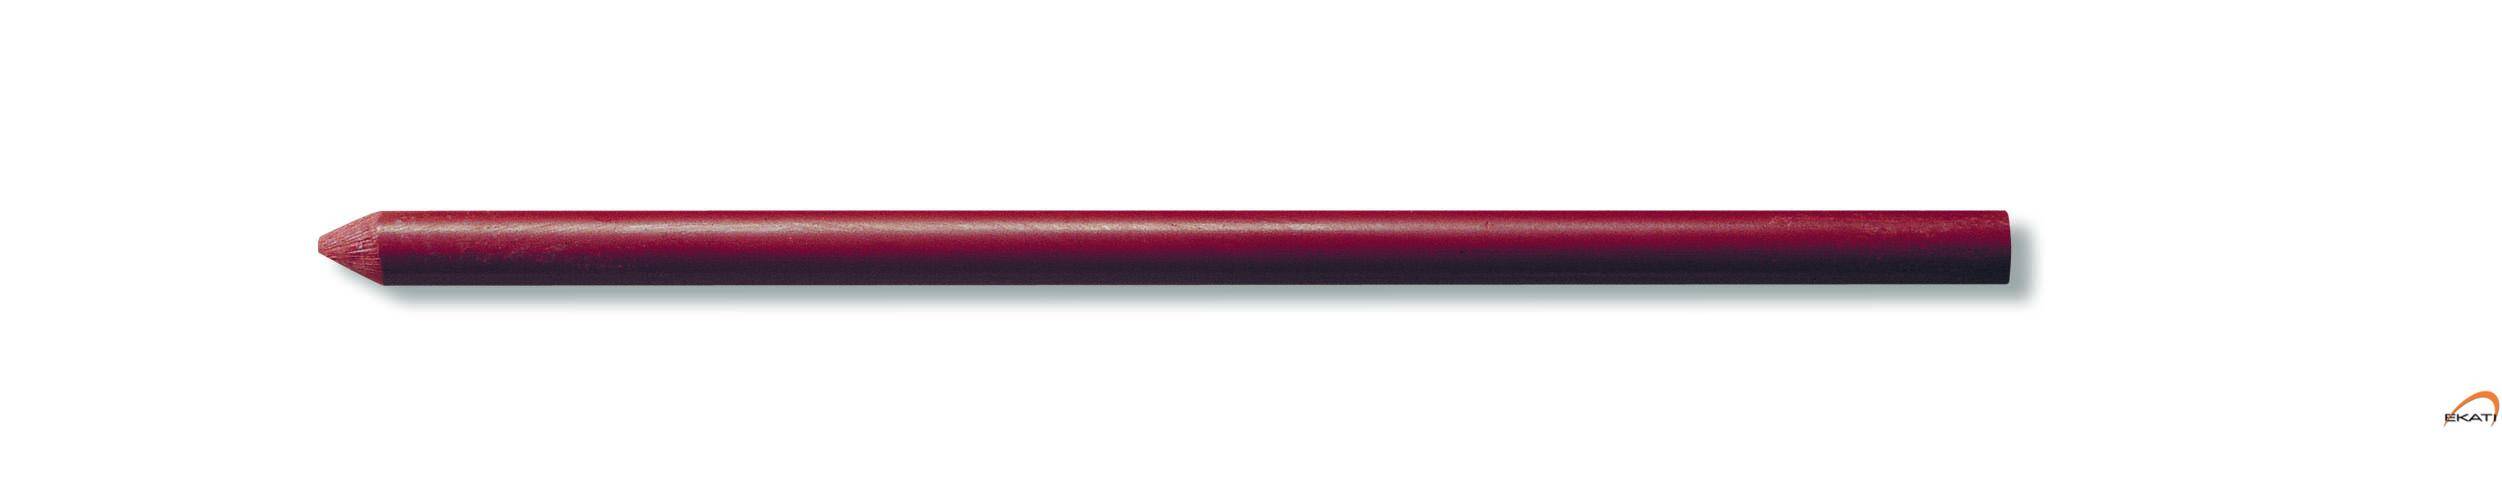 Graf.5.6mm 4373 do KUB.rudka czerwony